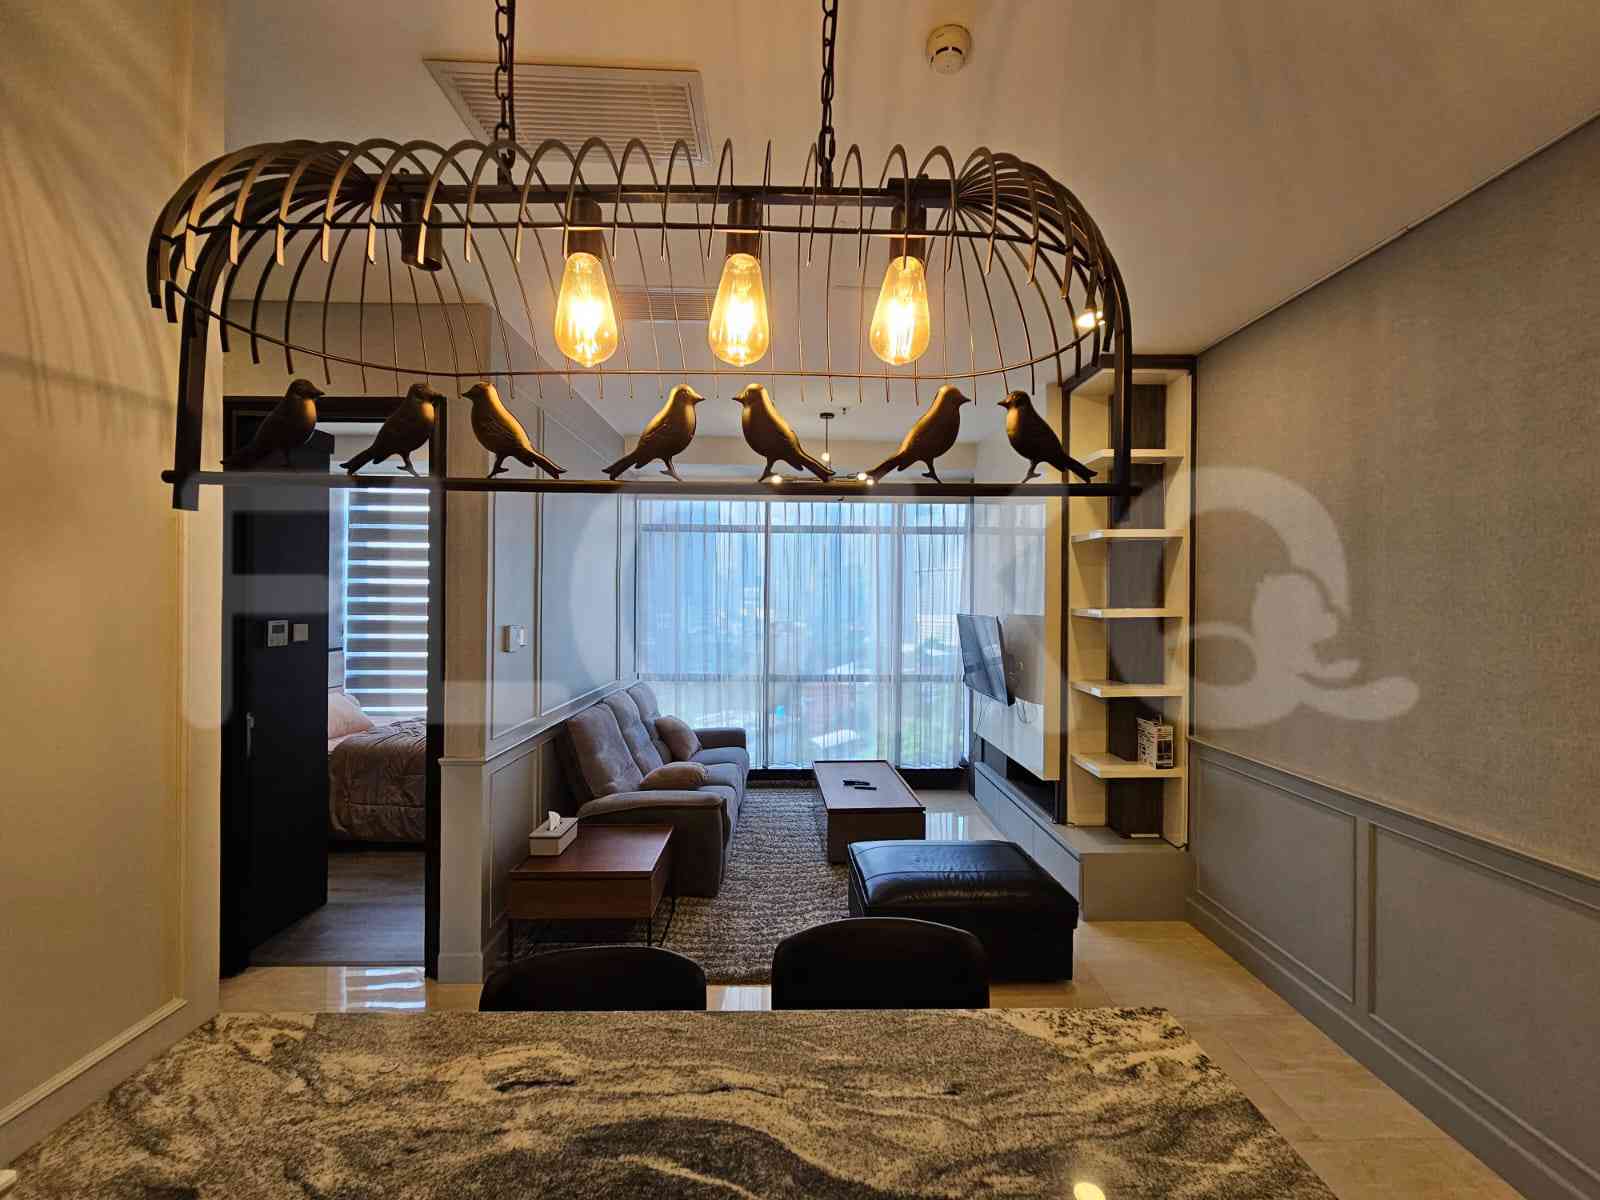 3 Bedroom on 9th Floor for Rent in Sudirman Suites Jakarta - fsu16c 1